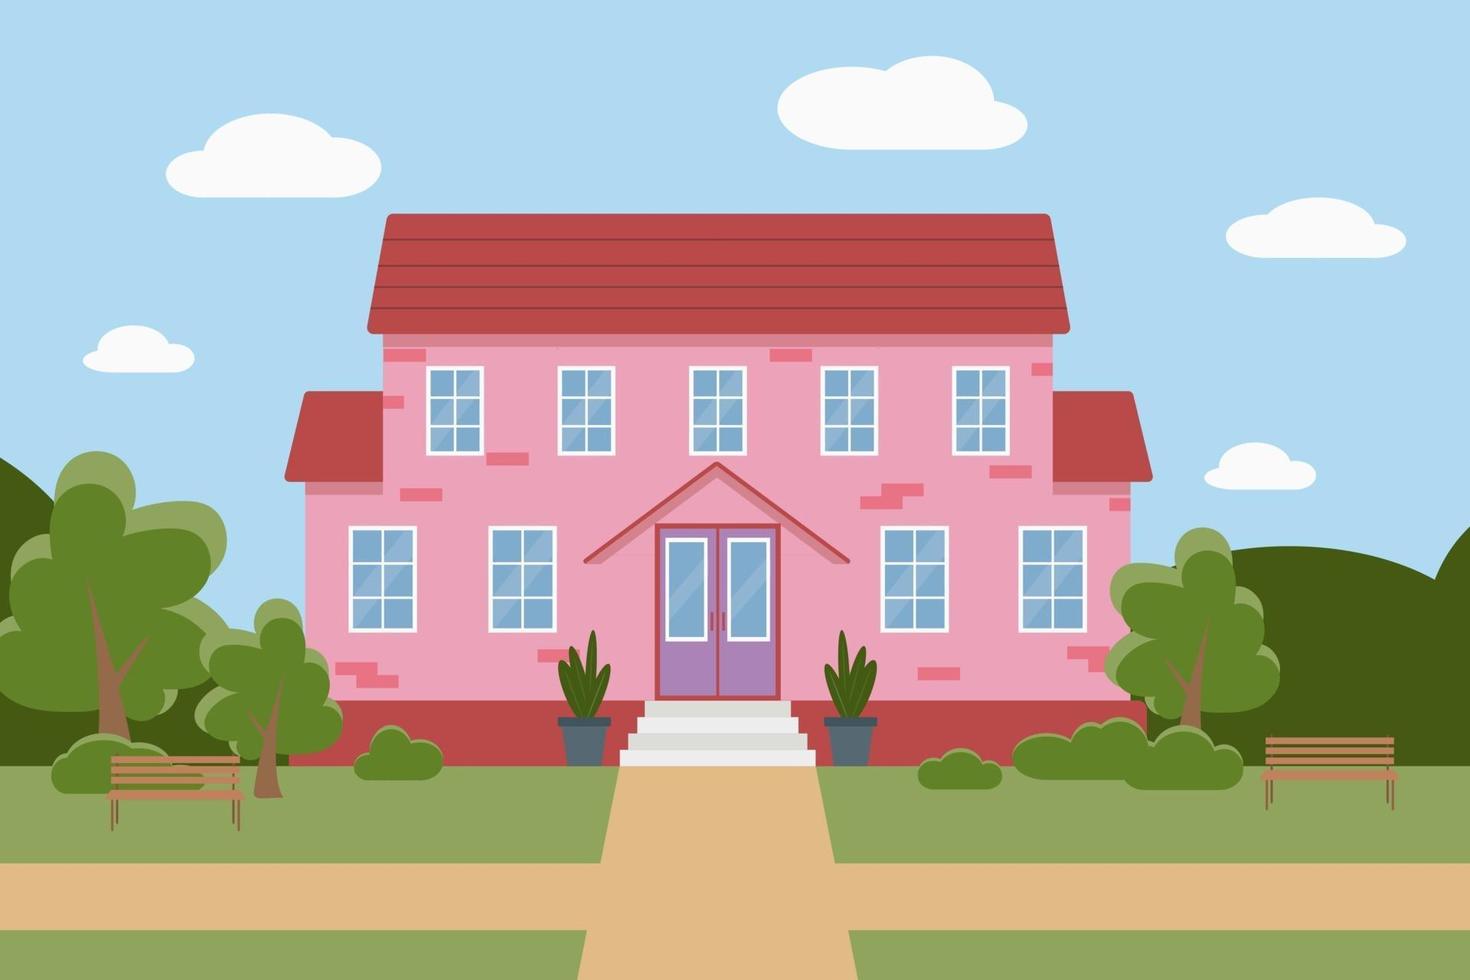 platt vektor illustration av ett rosa hus med träd och bänkar